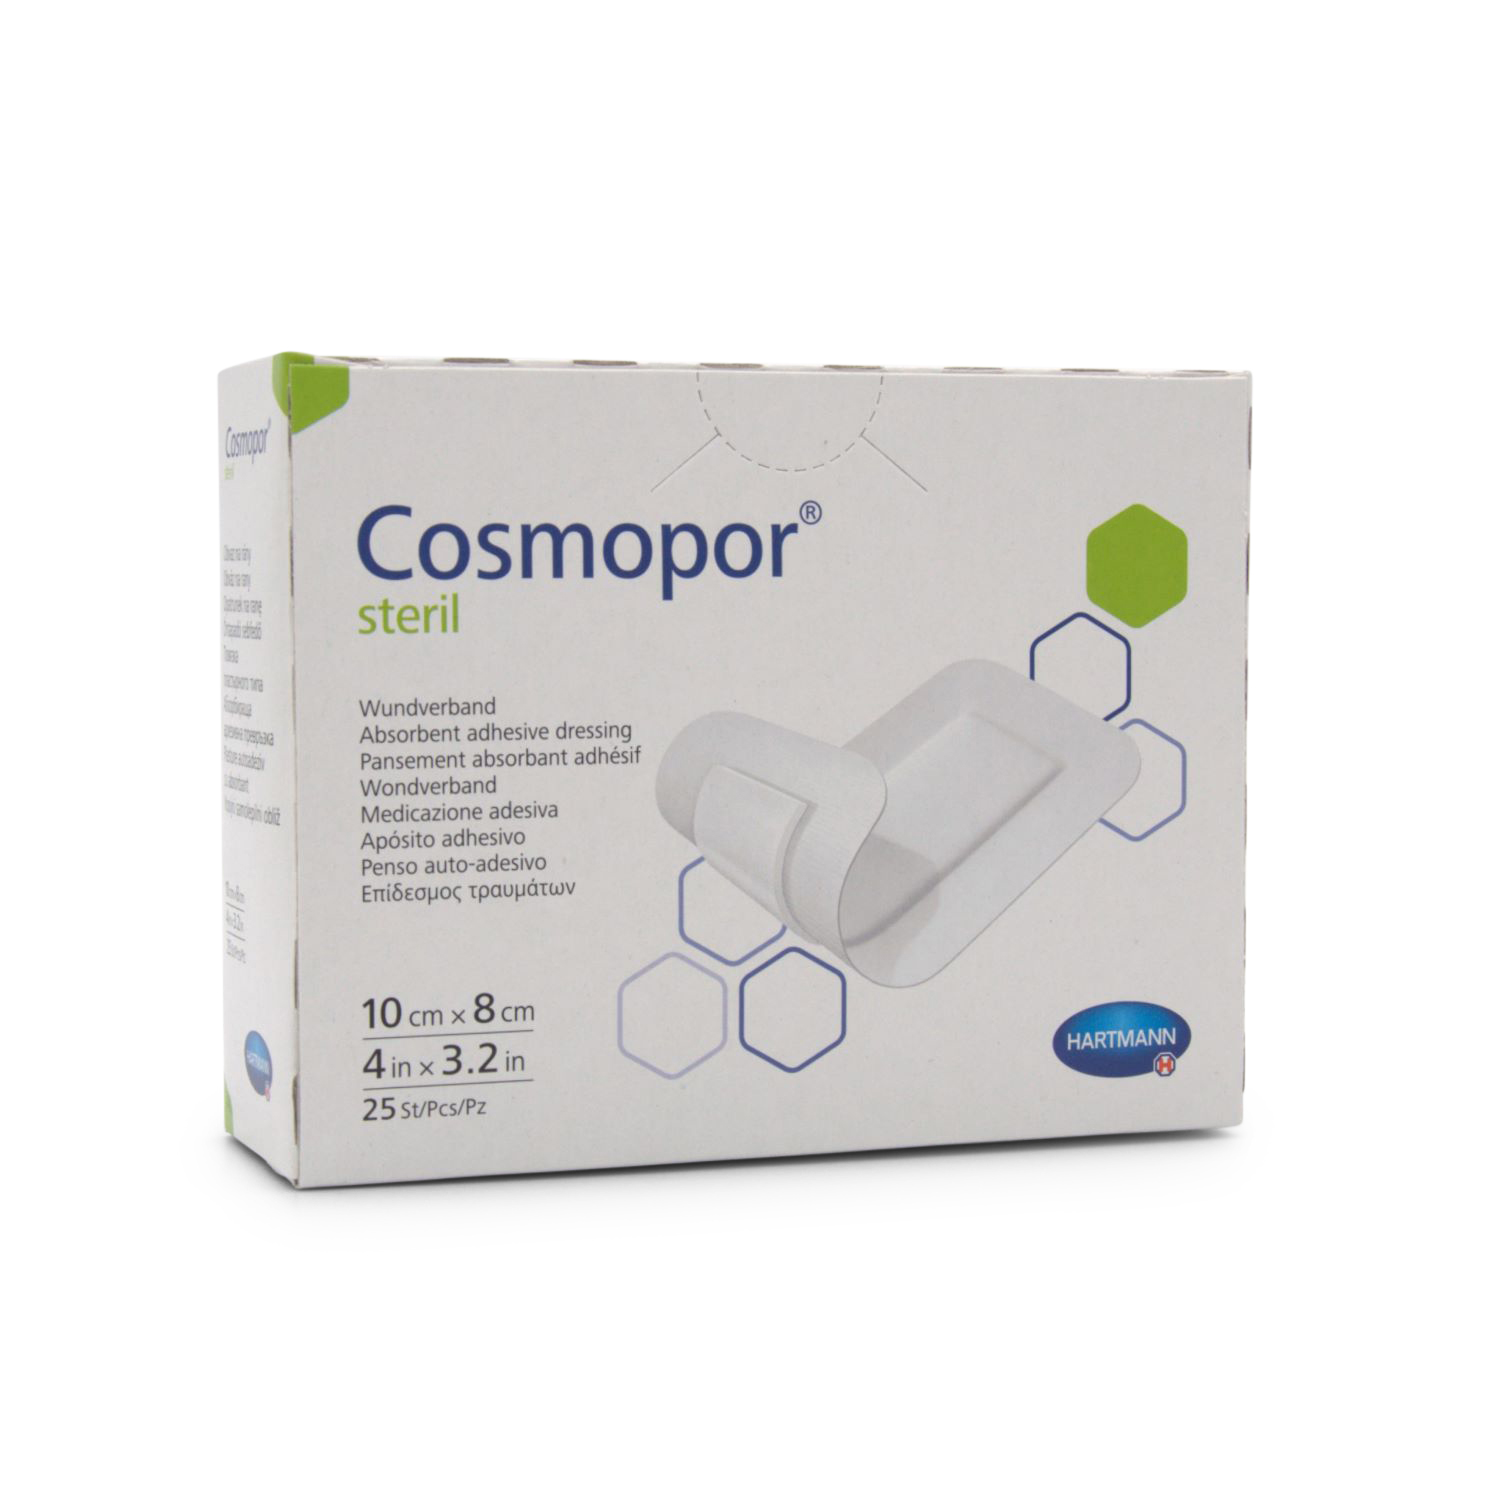 Cosmopor® Steril Wundverband (10 x 8 cm)